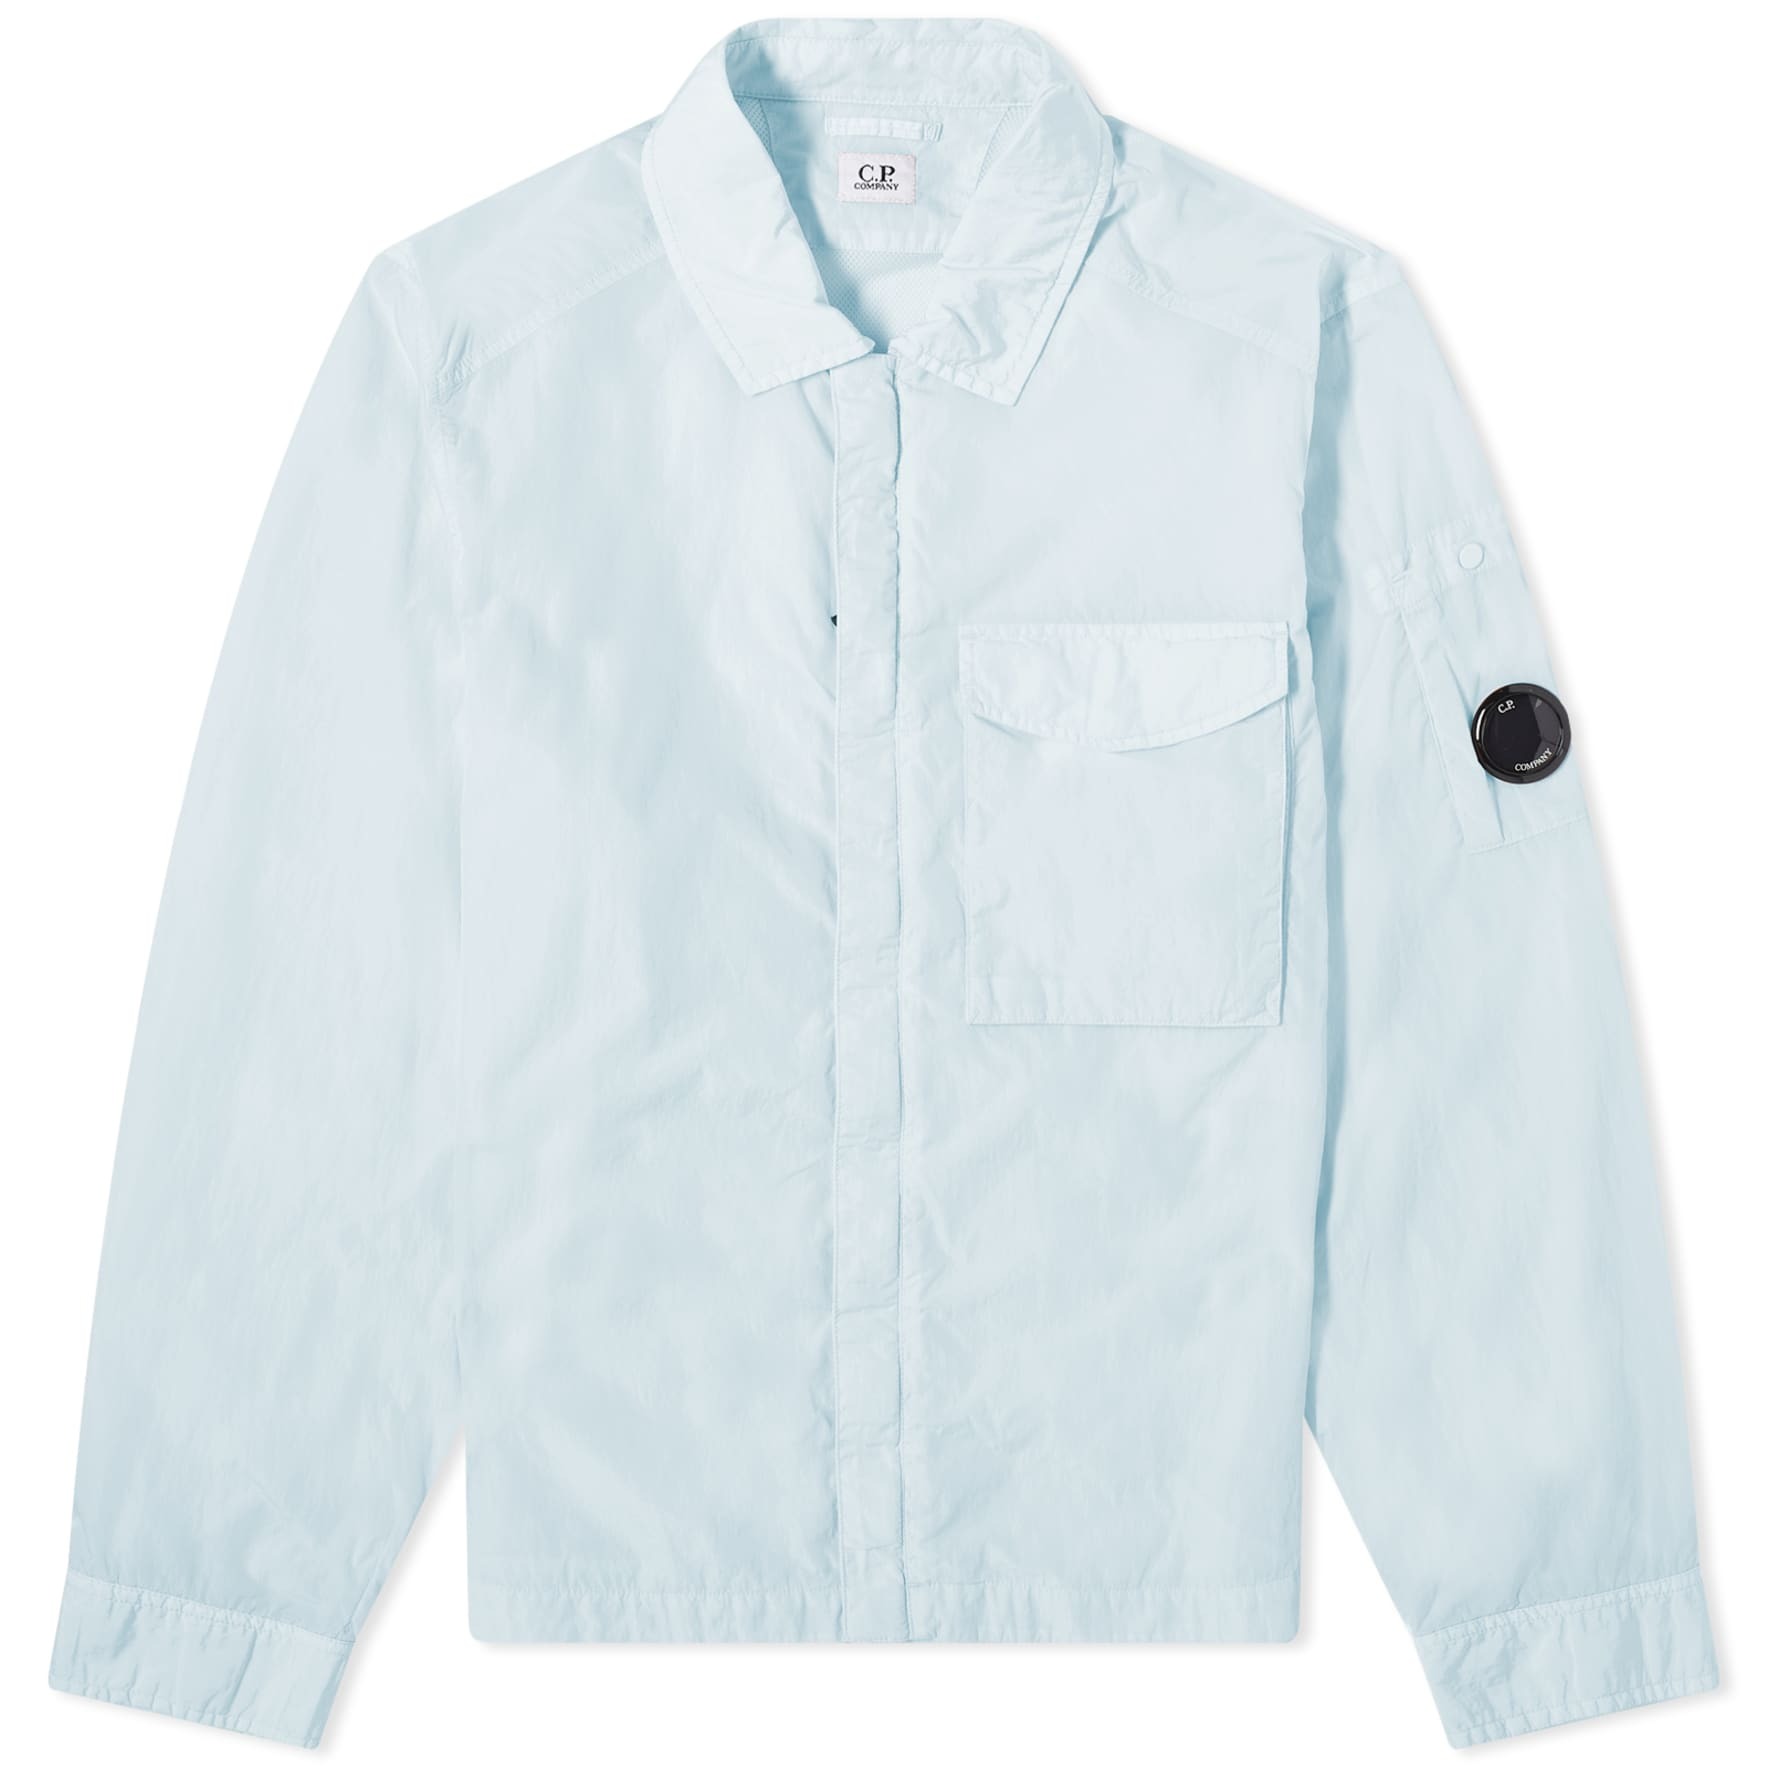 Куртка-рубашка C.P. Company Chrome-R Pocket, голубой куртка рубашка c p company chrome размер m зеленый